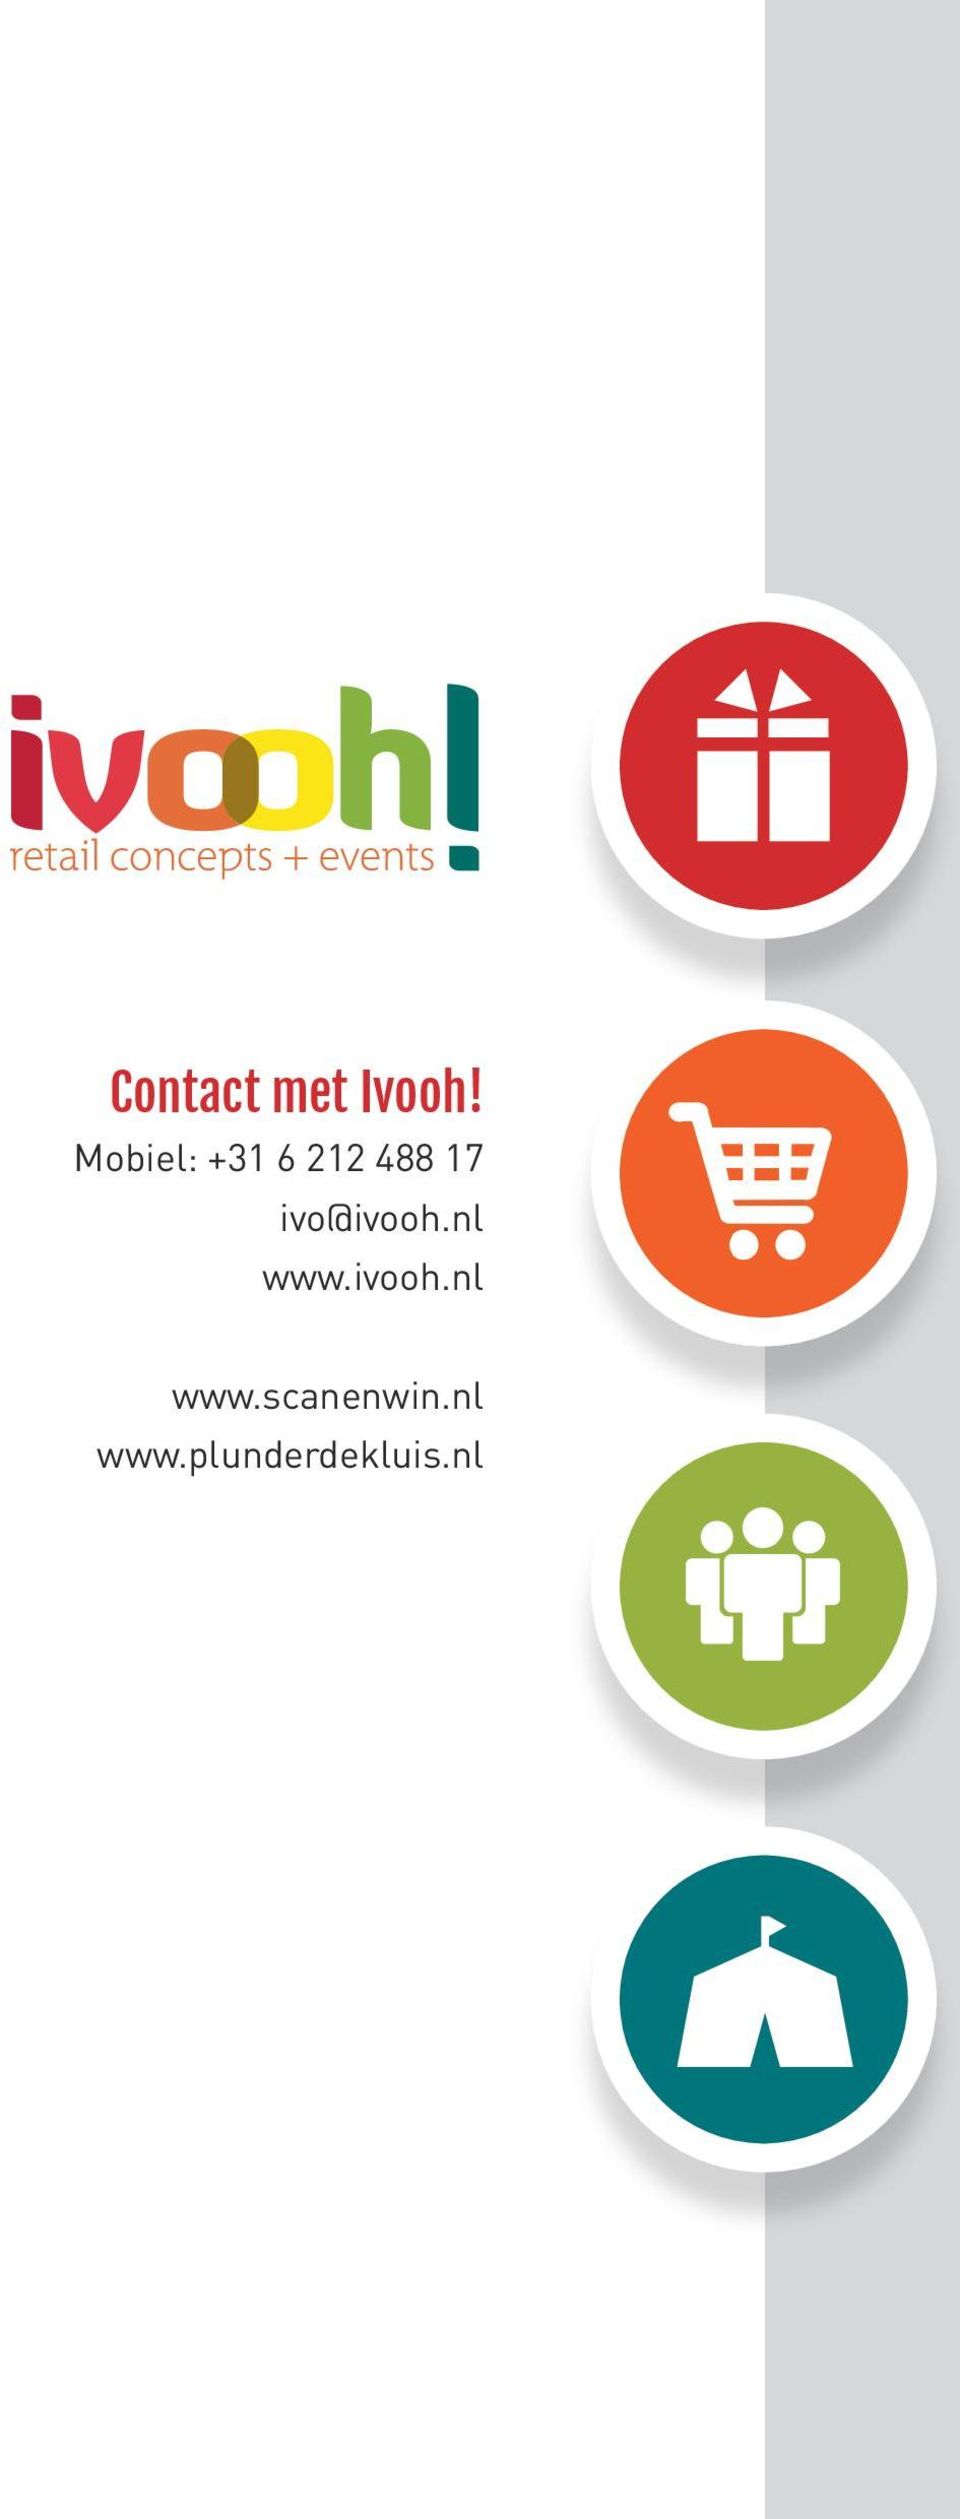 ivo@ivooh.nl www.ivooh.nl www.scanenwin.